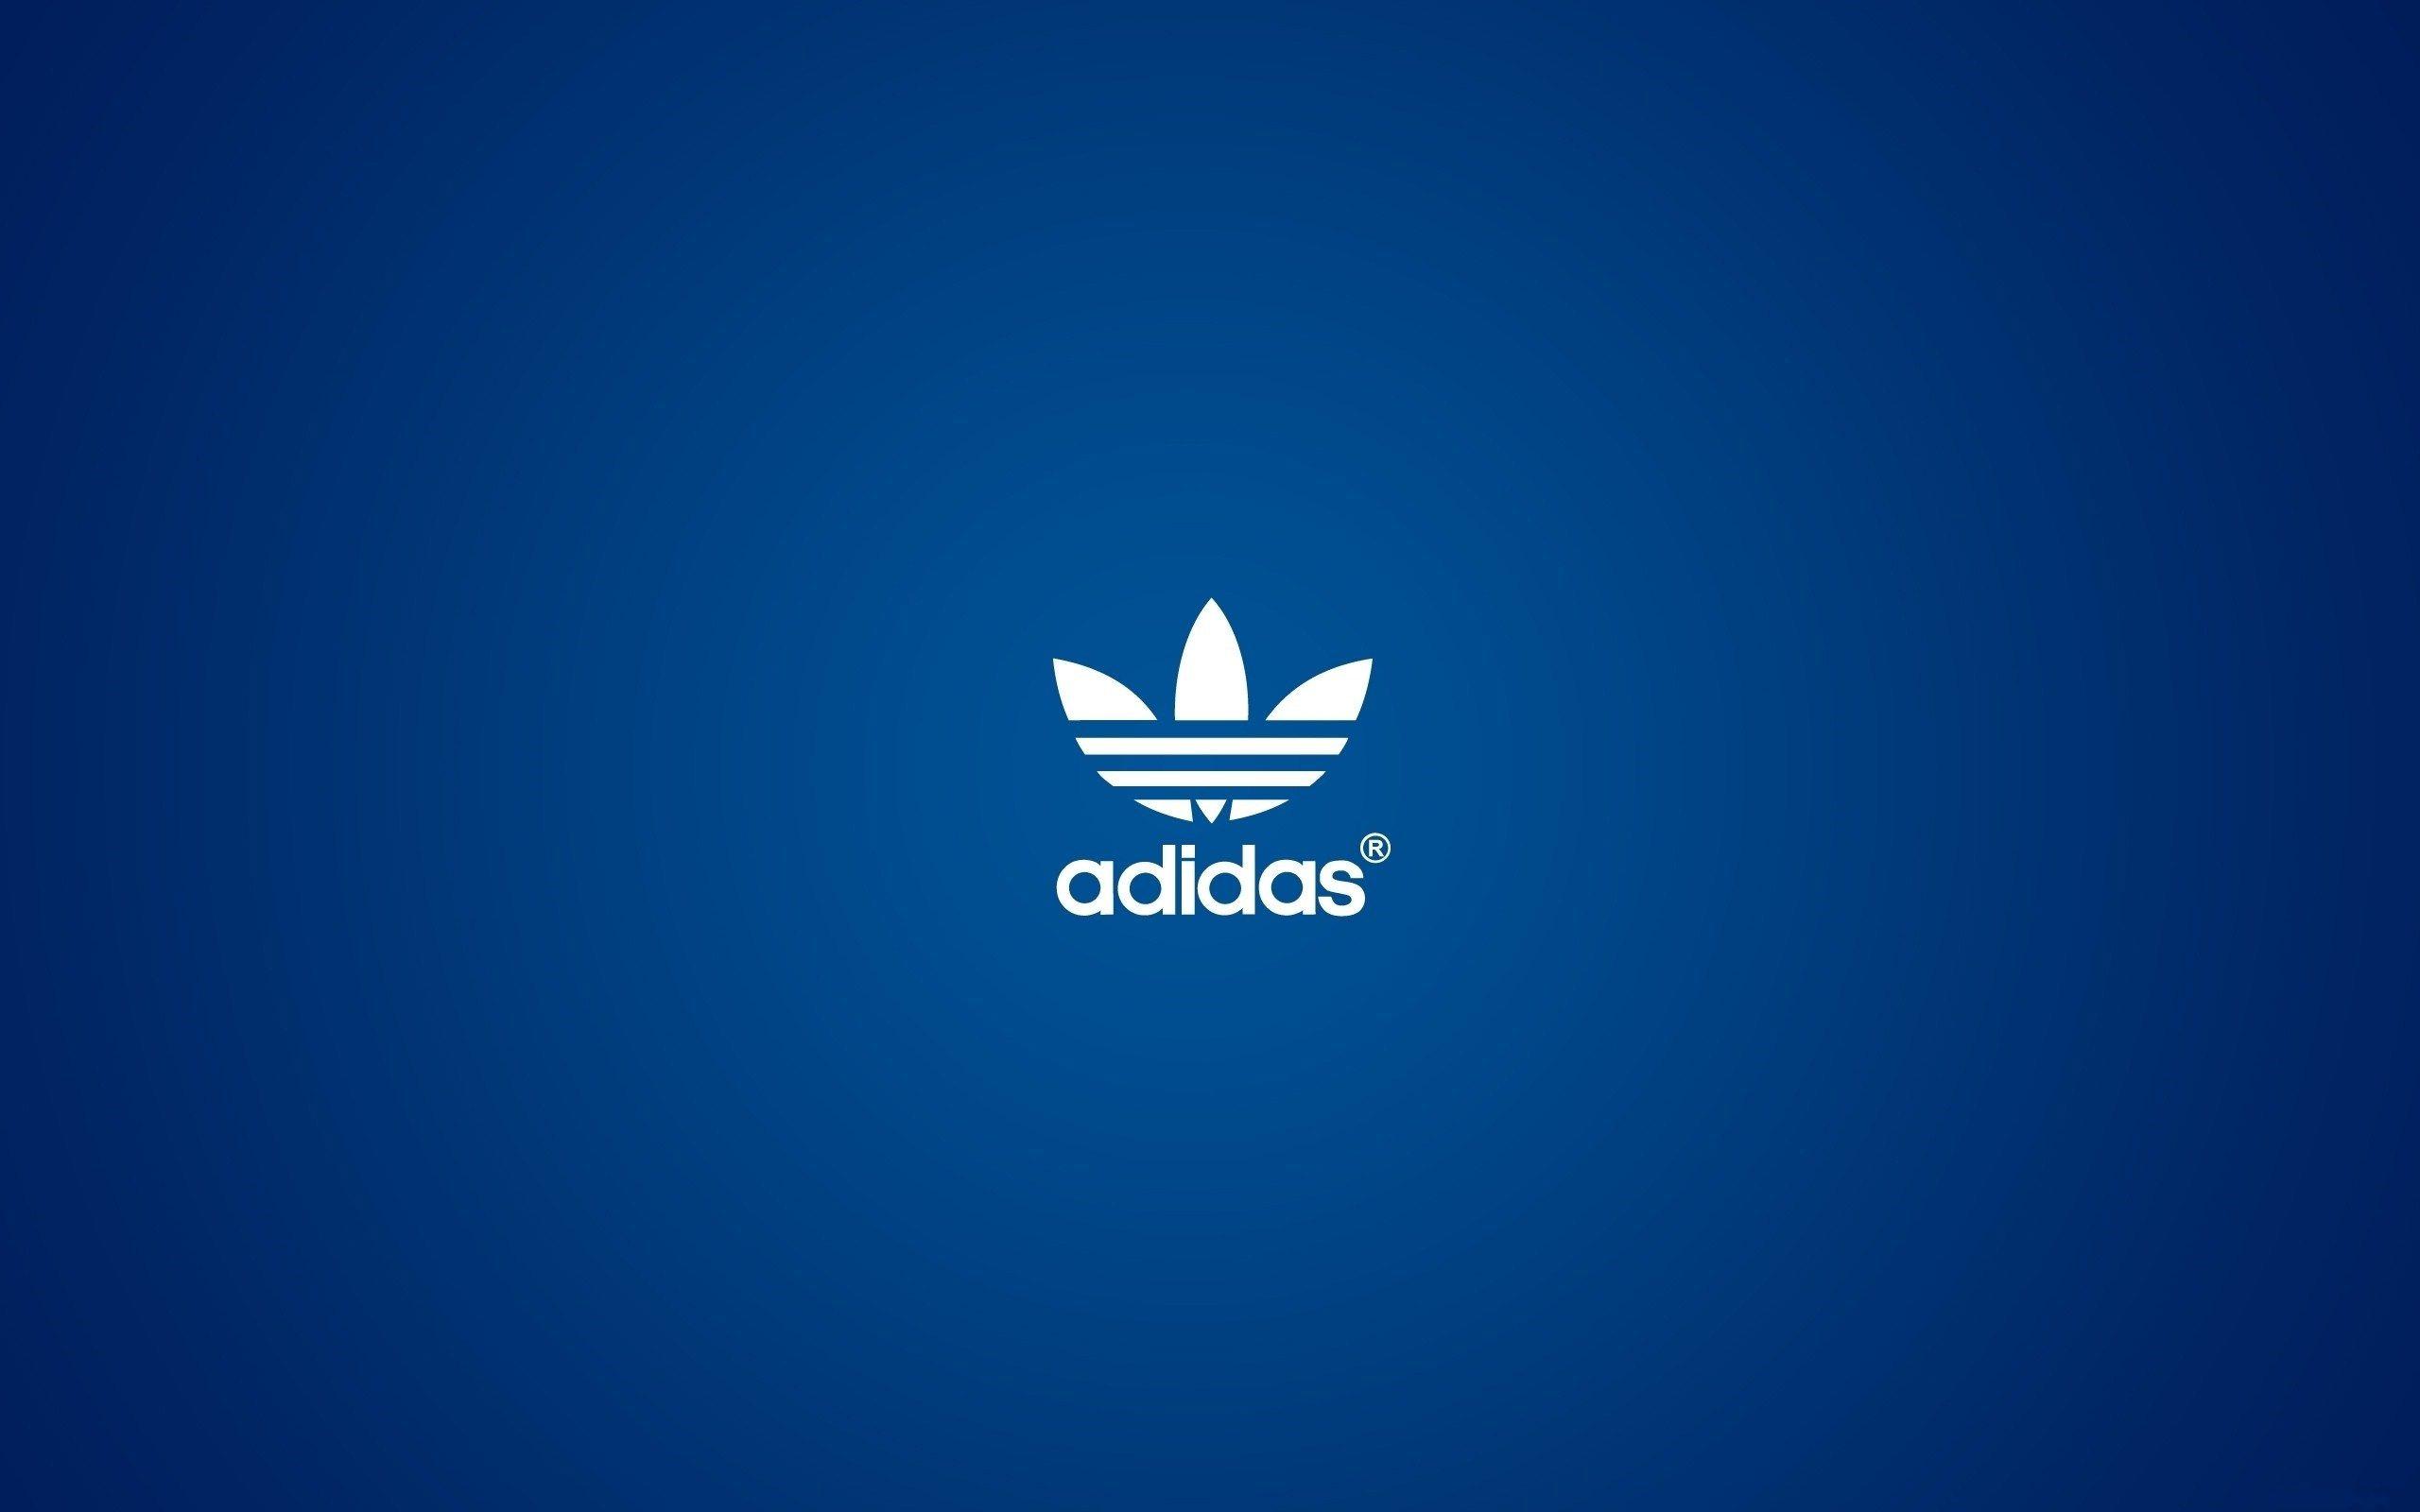 Adidas Logo Hd Wallpaper Background Uhd 2k 4k 5k 2015 2016 Tablet